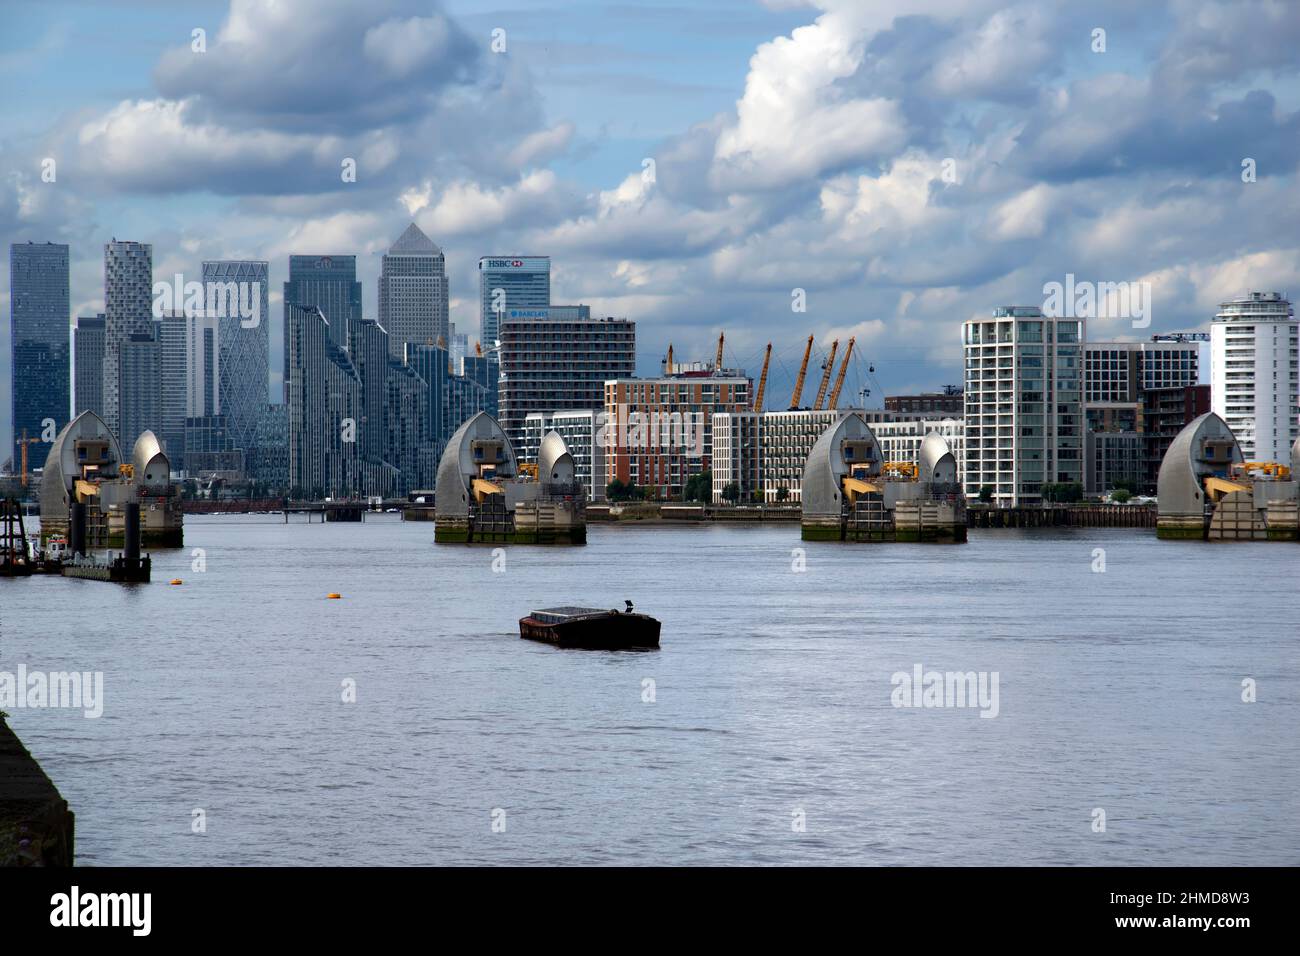 London, UK - September 17th 2021: The Thames Barrier Stock Photo